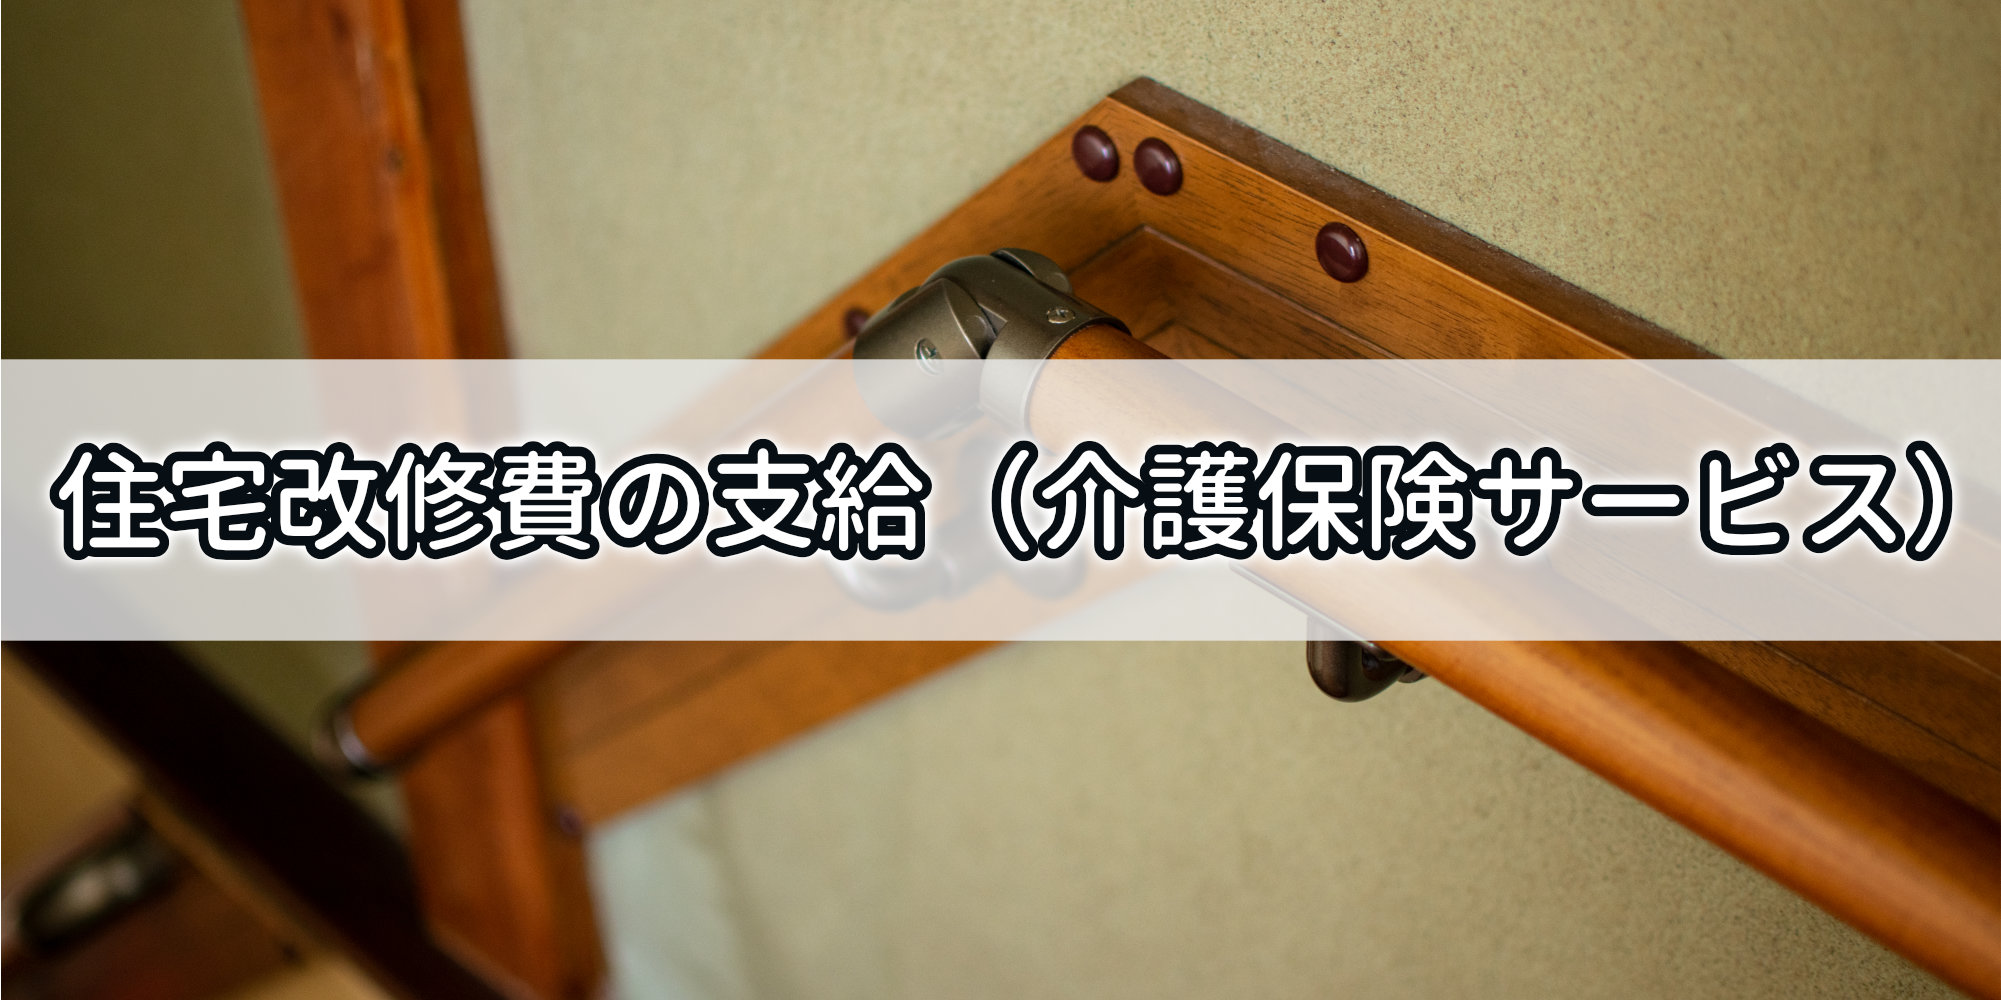 栃木市住宅改修費の支給（介護保険サービス）